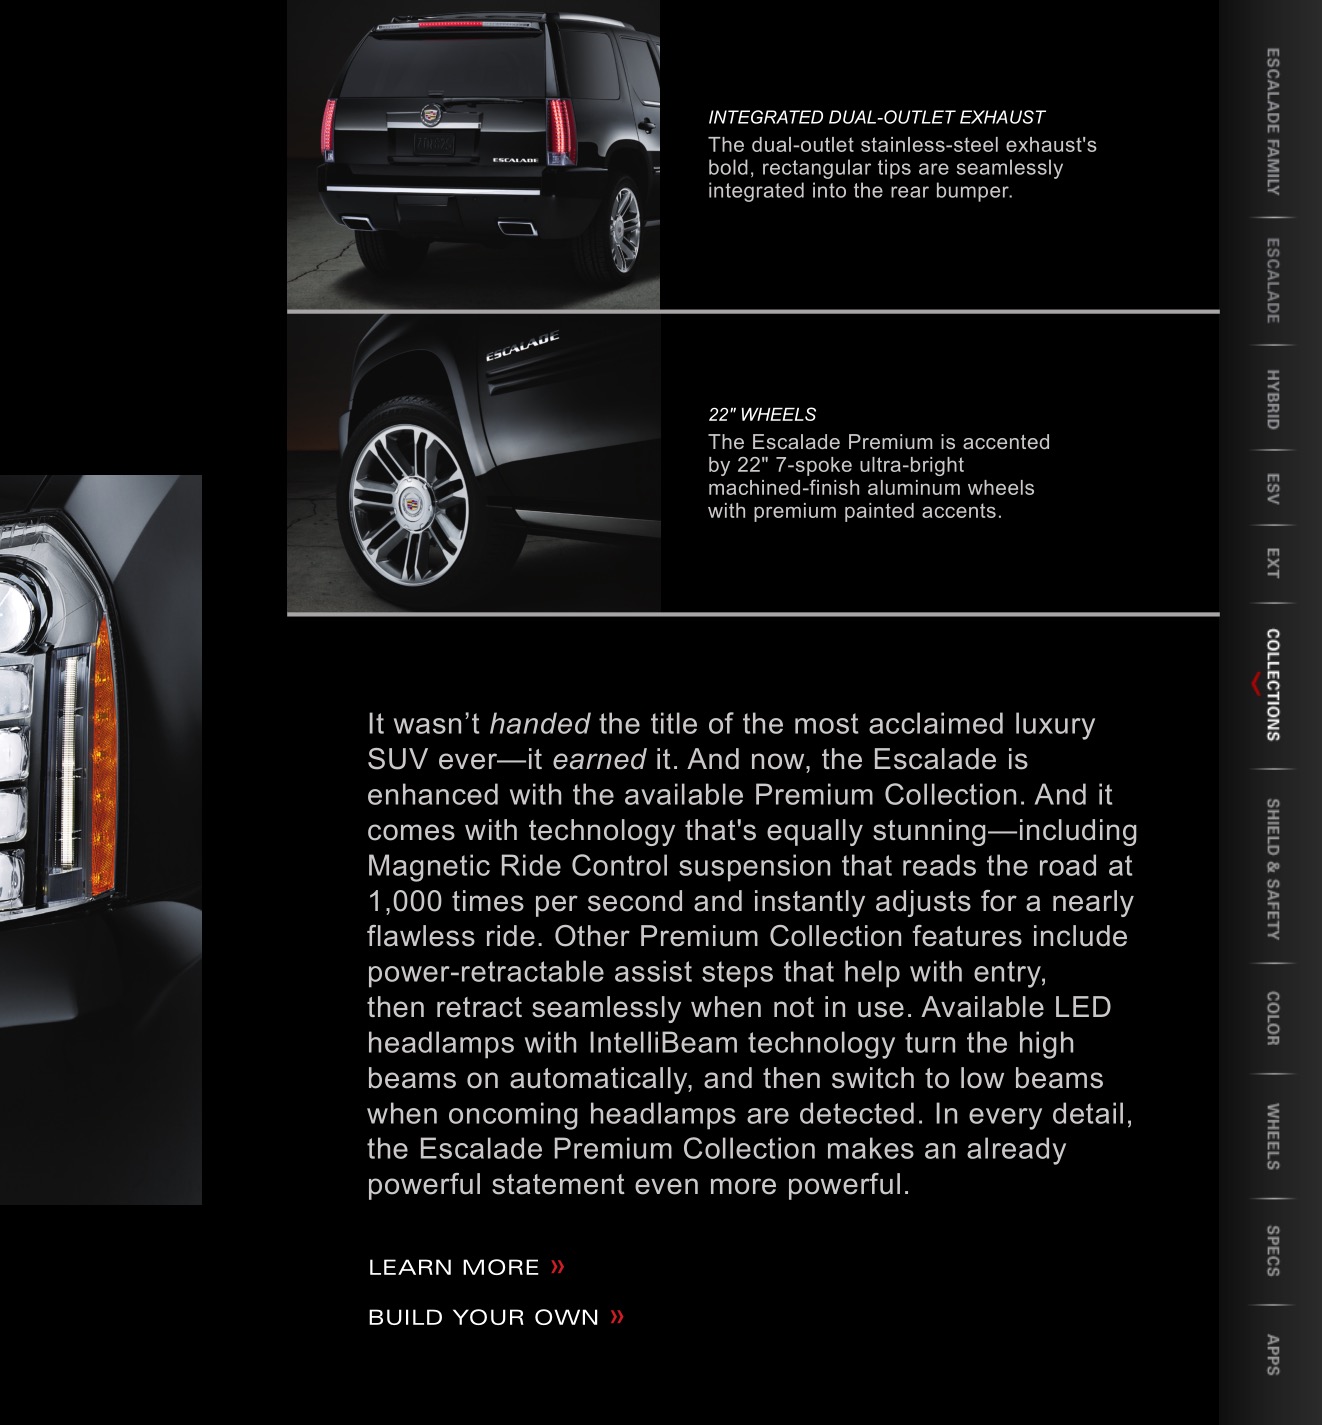 2012 Cadillac Escalade Brochure Page 2